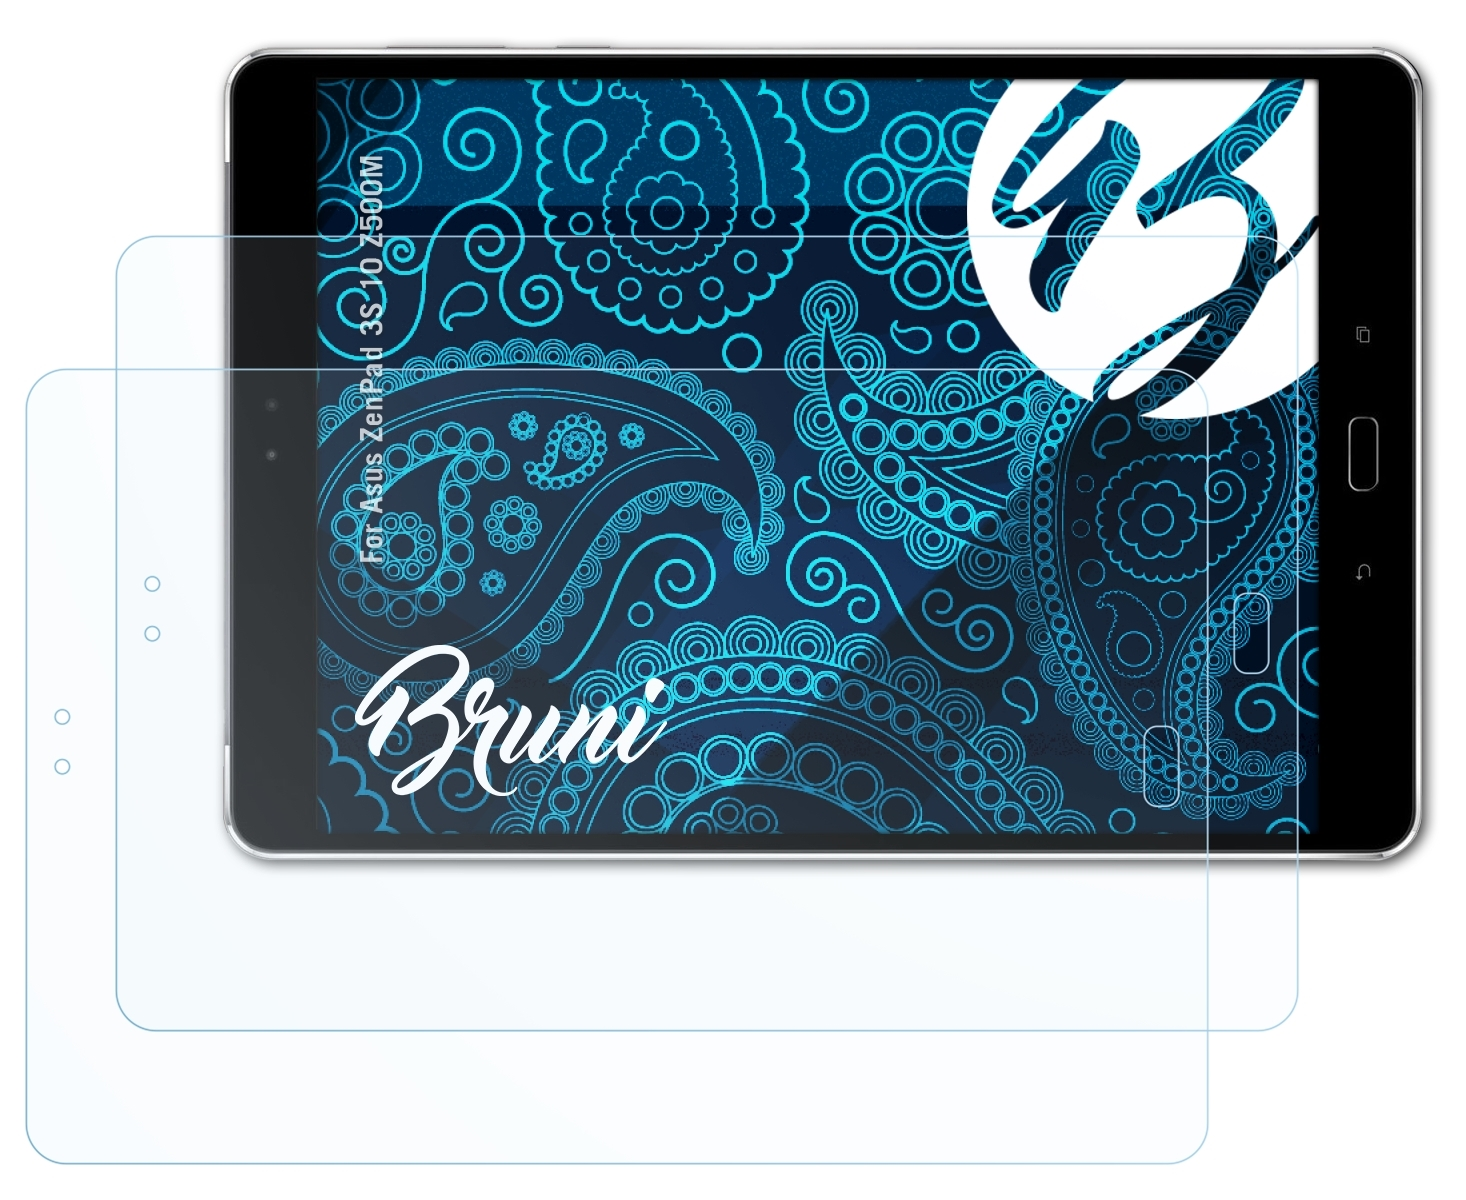 BRUNI 2x Basics-Clear Schutzfolie(für Asus 3S ZenPad 10 (Z500M))